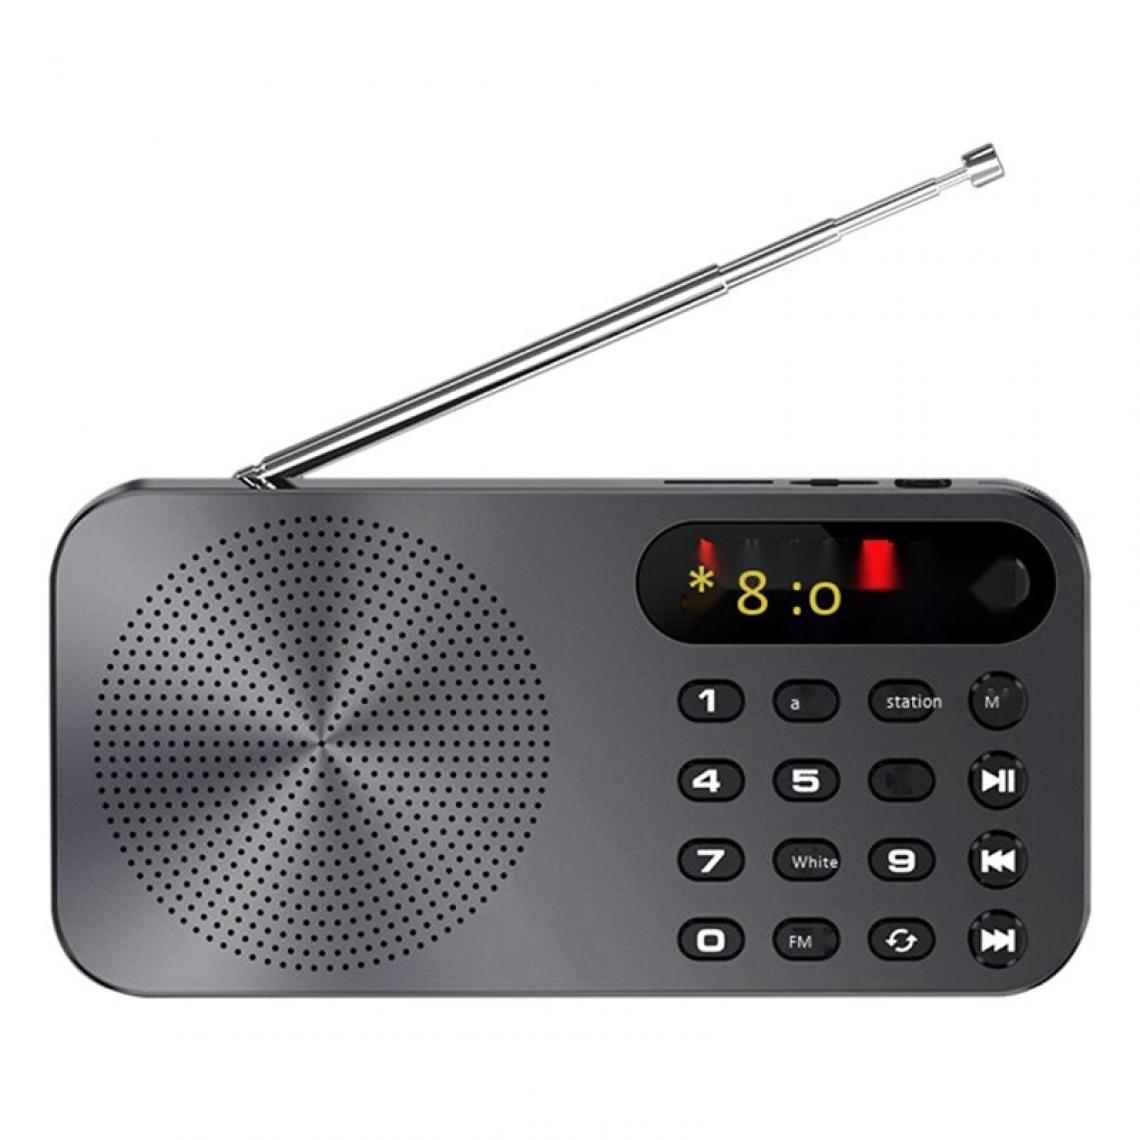 Universal - Radio FM multifonctionnelle Q6 rechargeable danseuse LED affichage numérique radio |(Le noir) - Radio